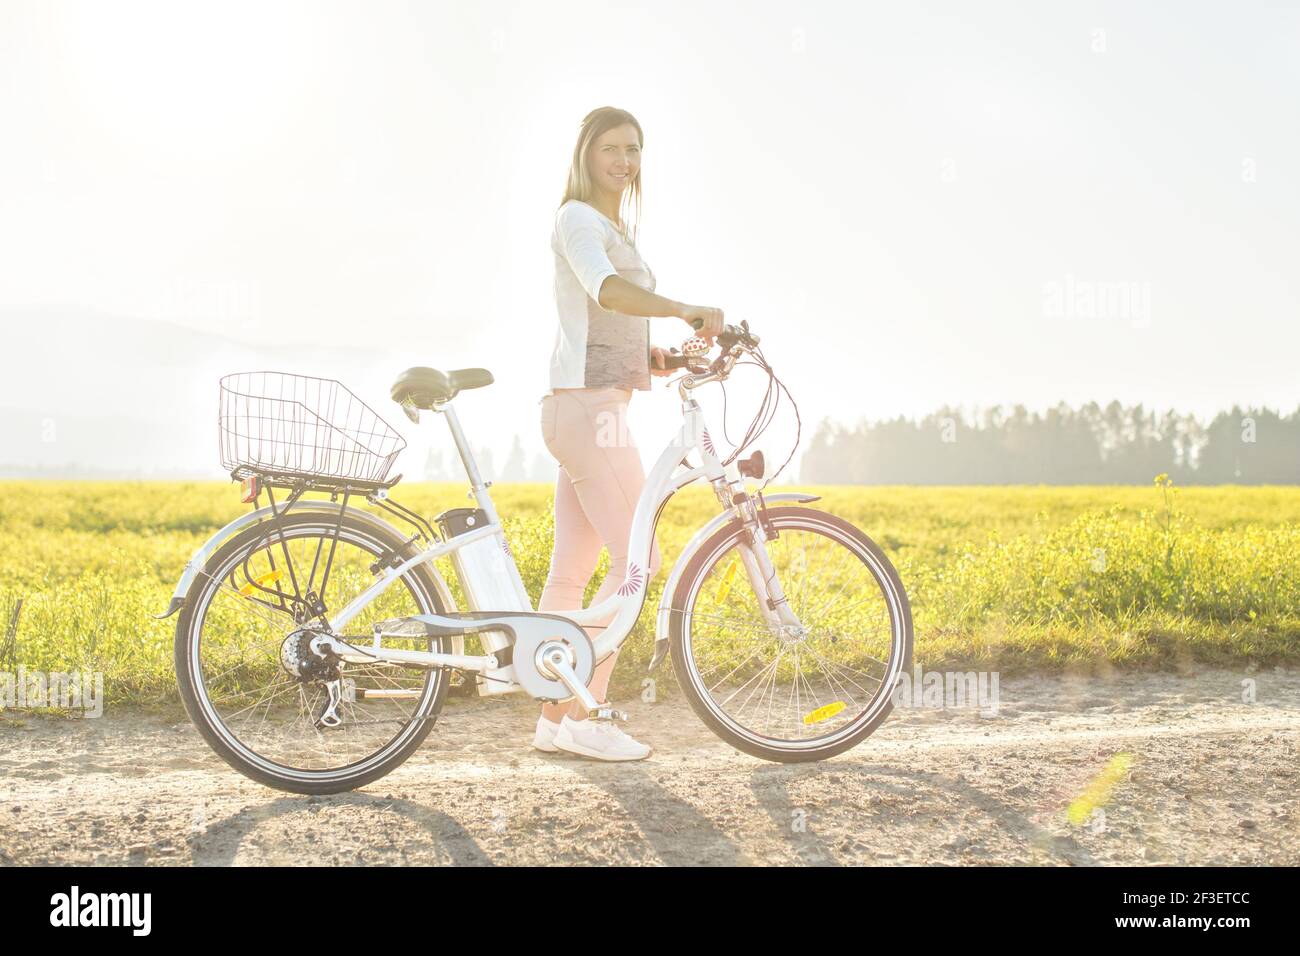 Junge Frau neben ihrem Elektro-Fahrrad über staubige Landstraße stehen, starke Nachmittag Sonne Hintergrundbeleuchtung im Hintergrund leuchtet auf gelben Blumen Feld, V Stockfoto